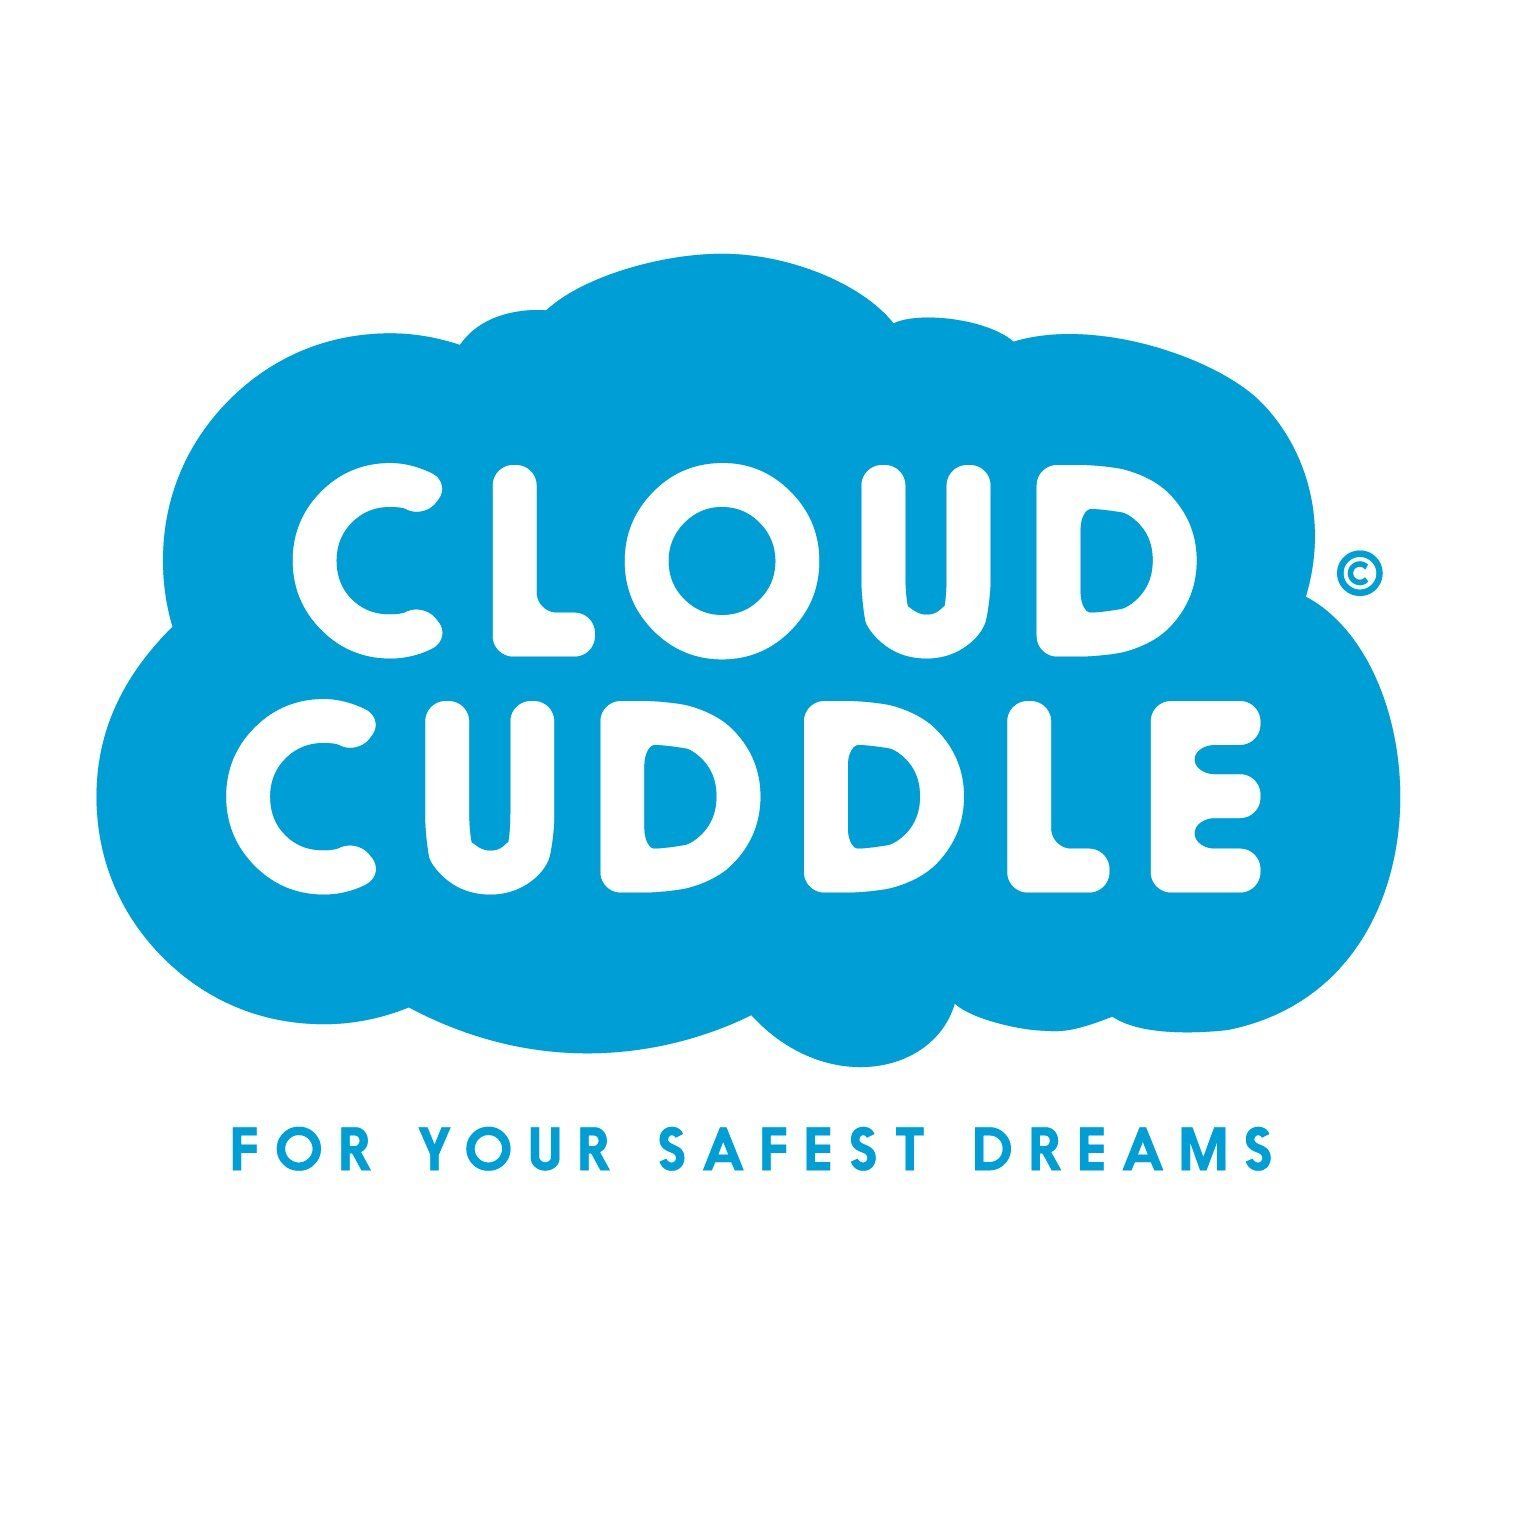 CloudCuddle Logo